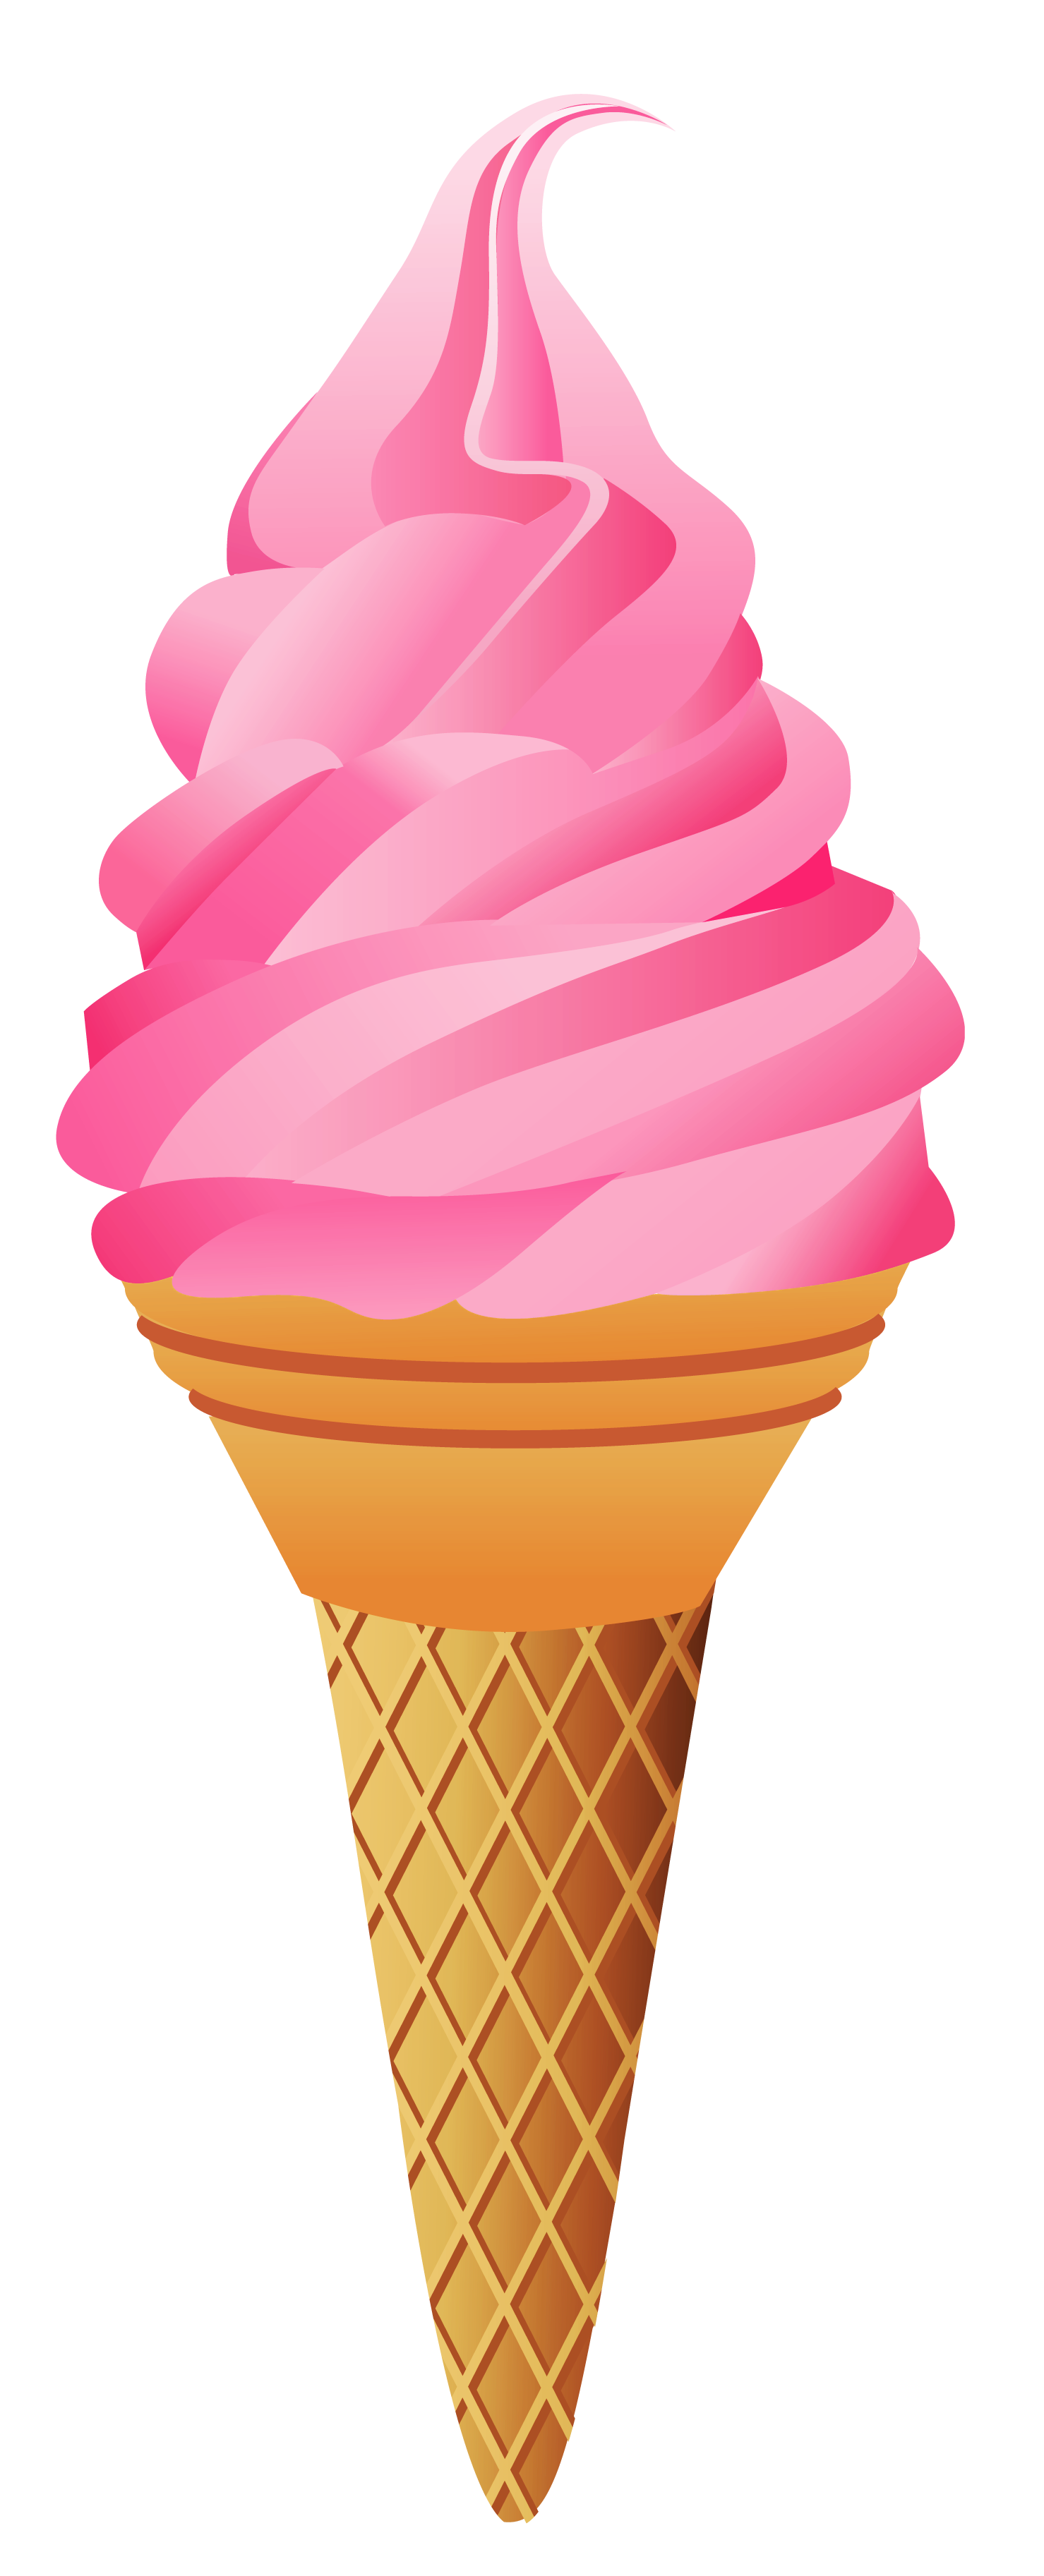 50 Free Ice Cream Cone Clip Art